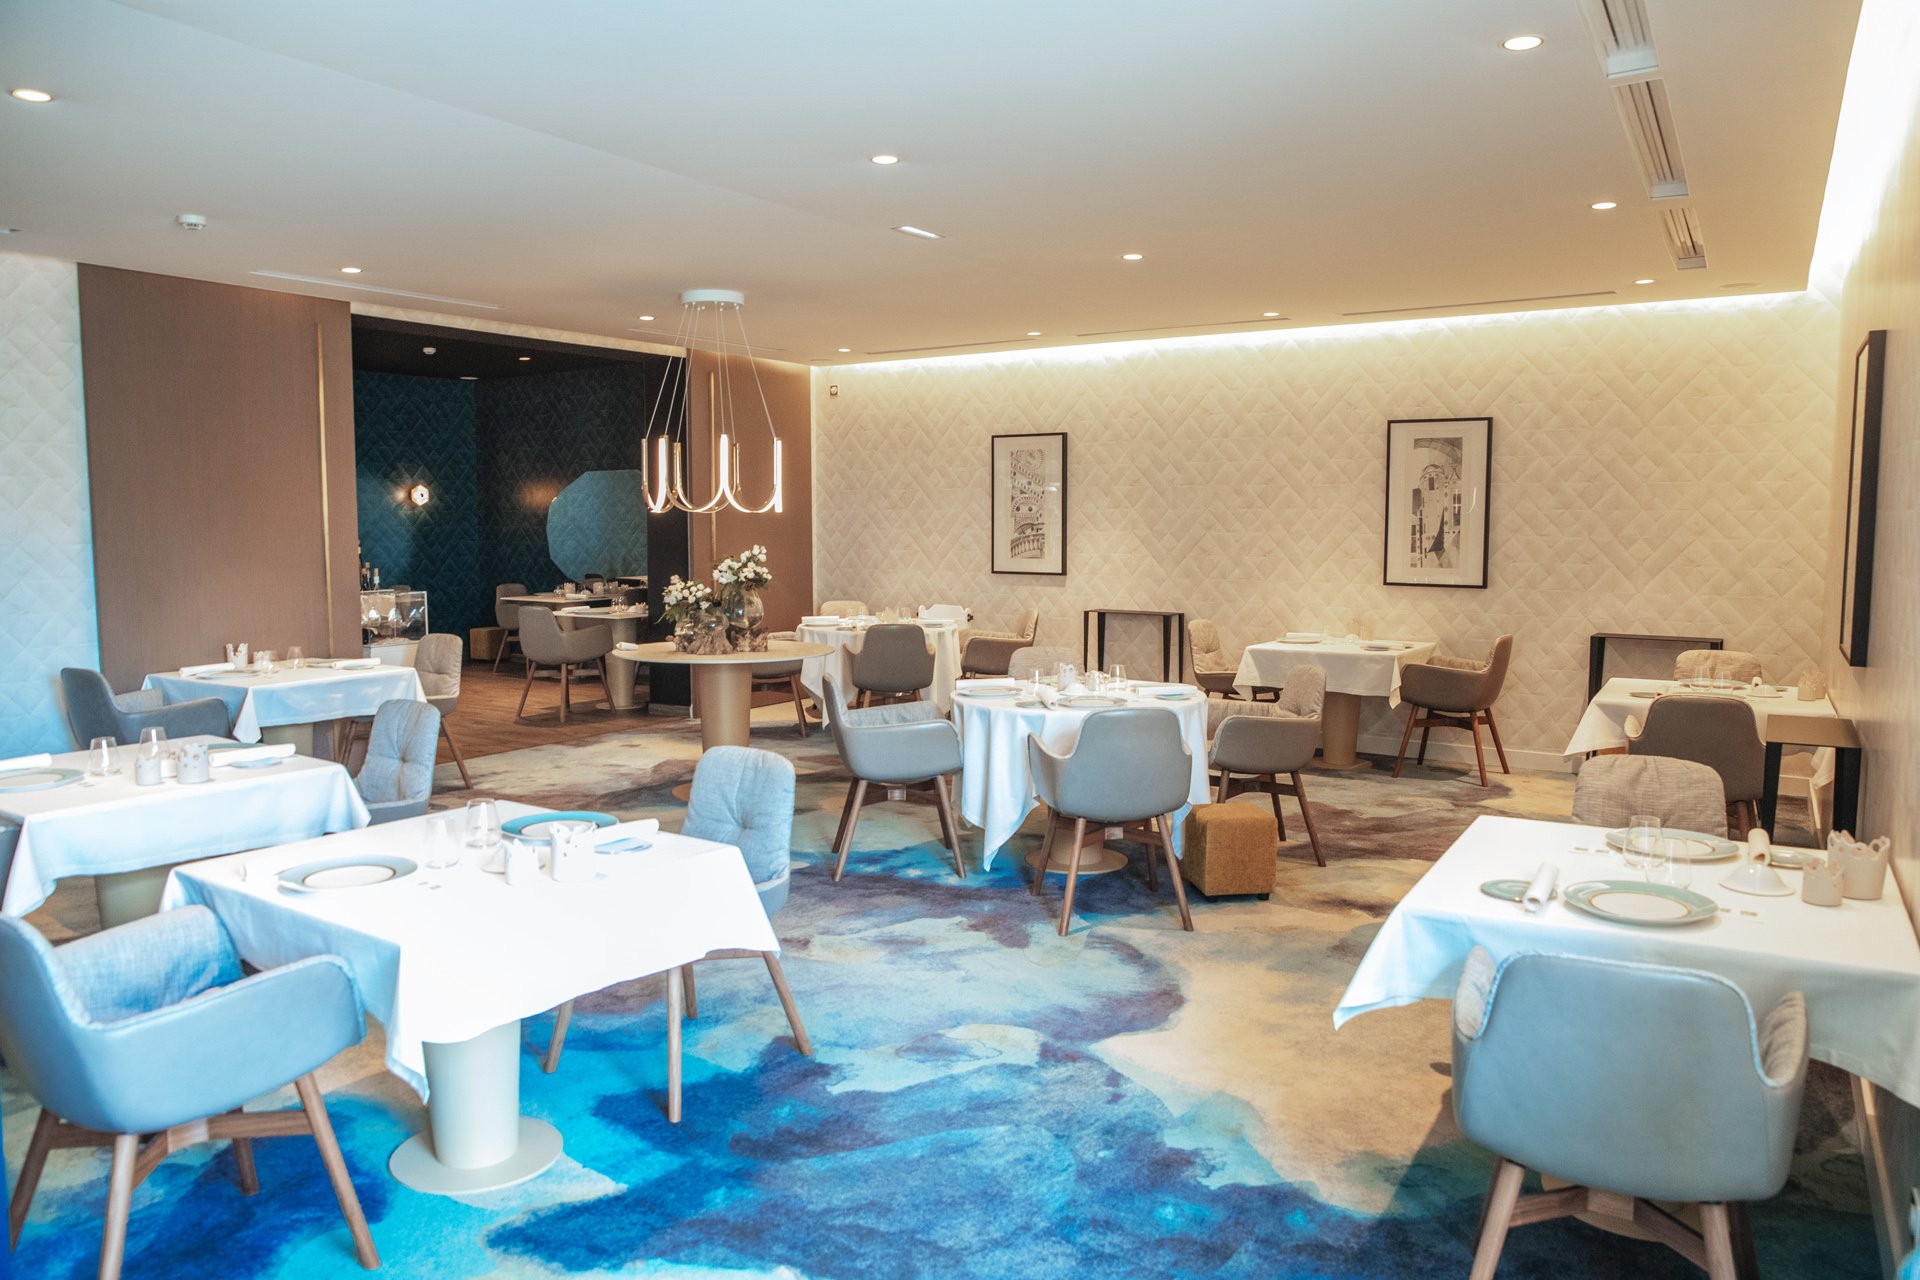 La Maison d'à Côté 2* Chambord Loire Montlivault France restaurant 2 étoiles Michelin